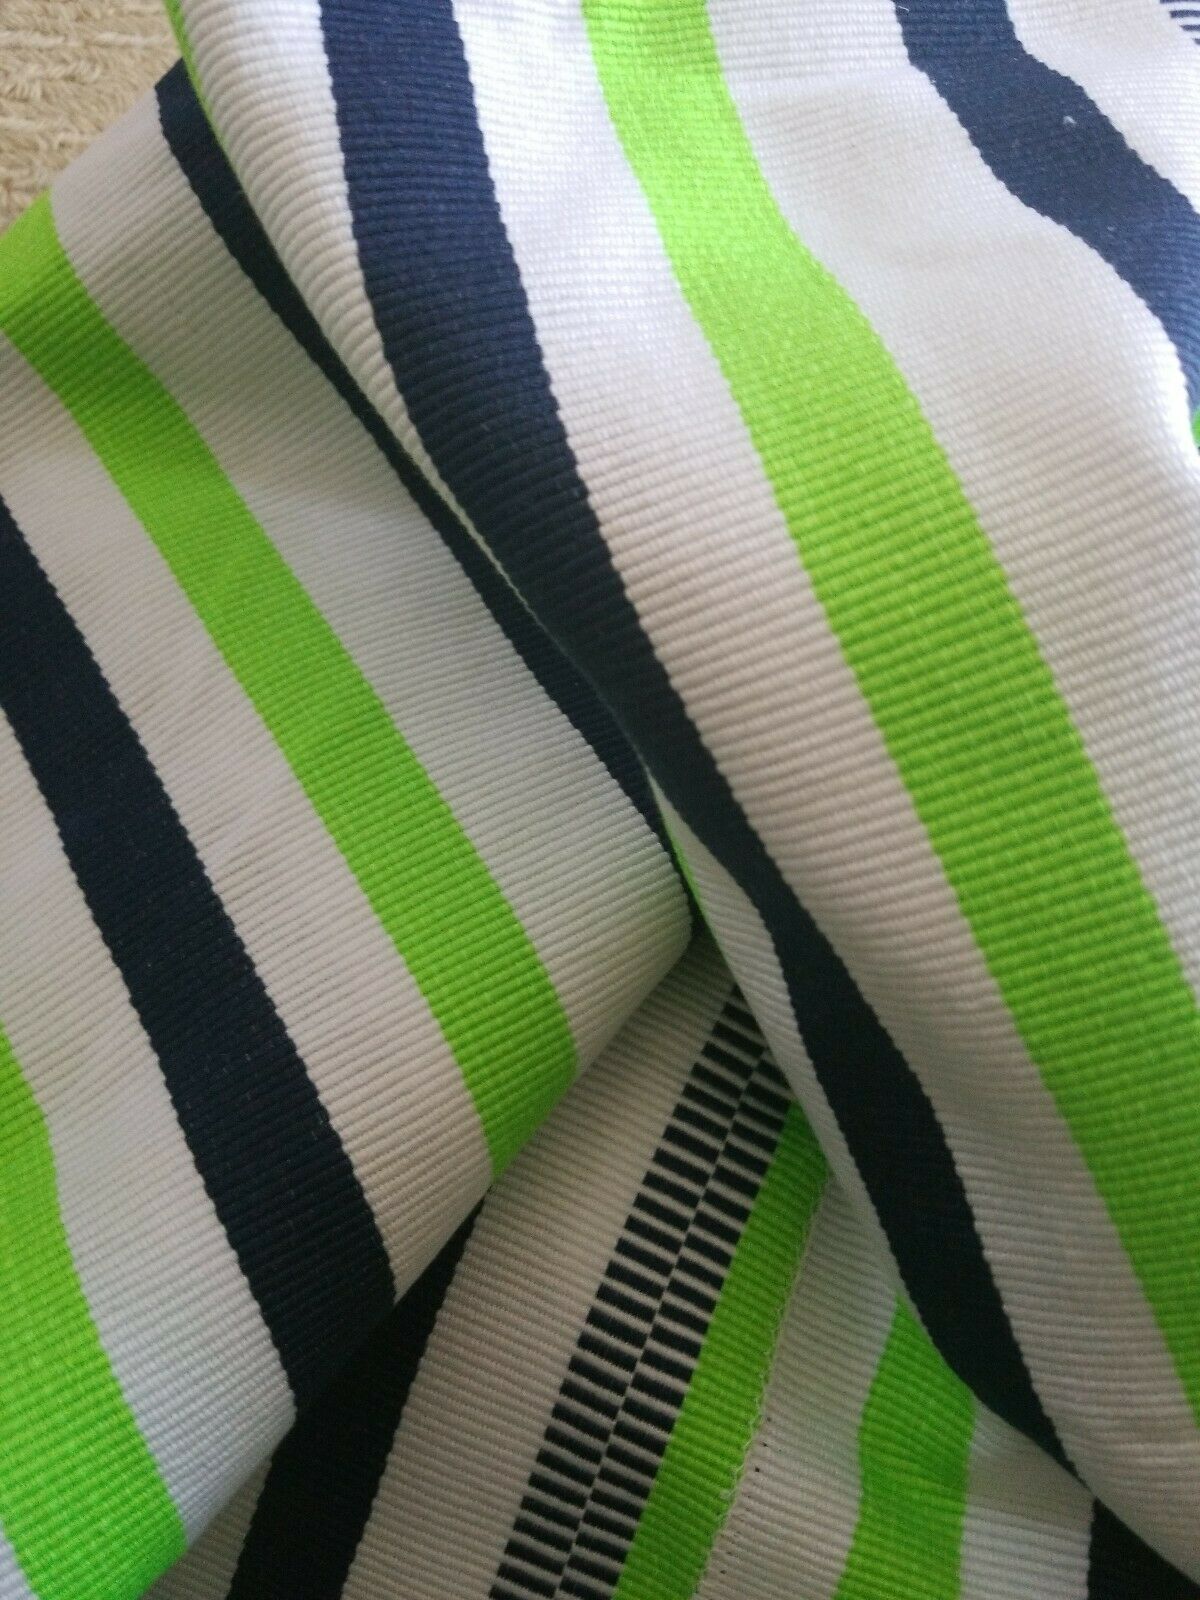 Hand woven Faso Da Fani Fabric From Boukina Faso~GreenBlueWhite Stripes 58"×73"